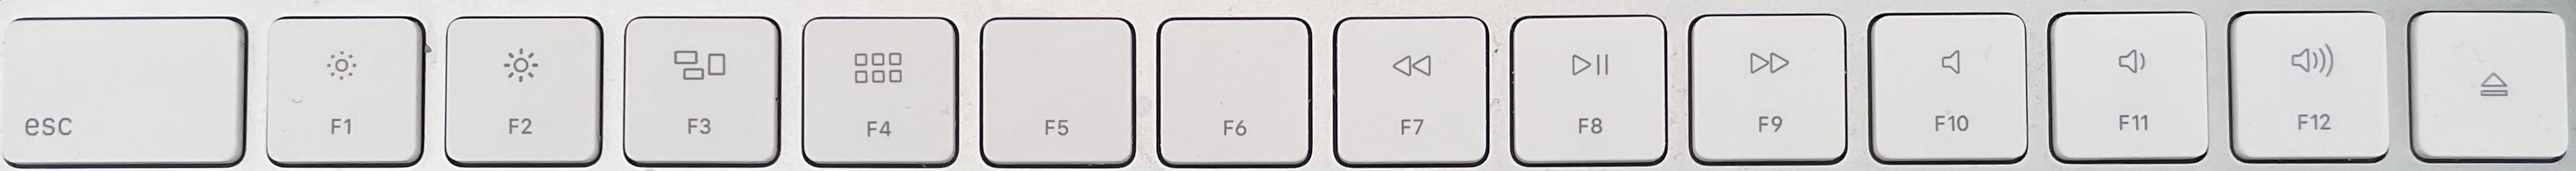 New Mac Magic Keyboard: What we'd like to see